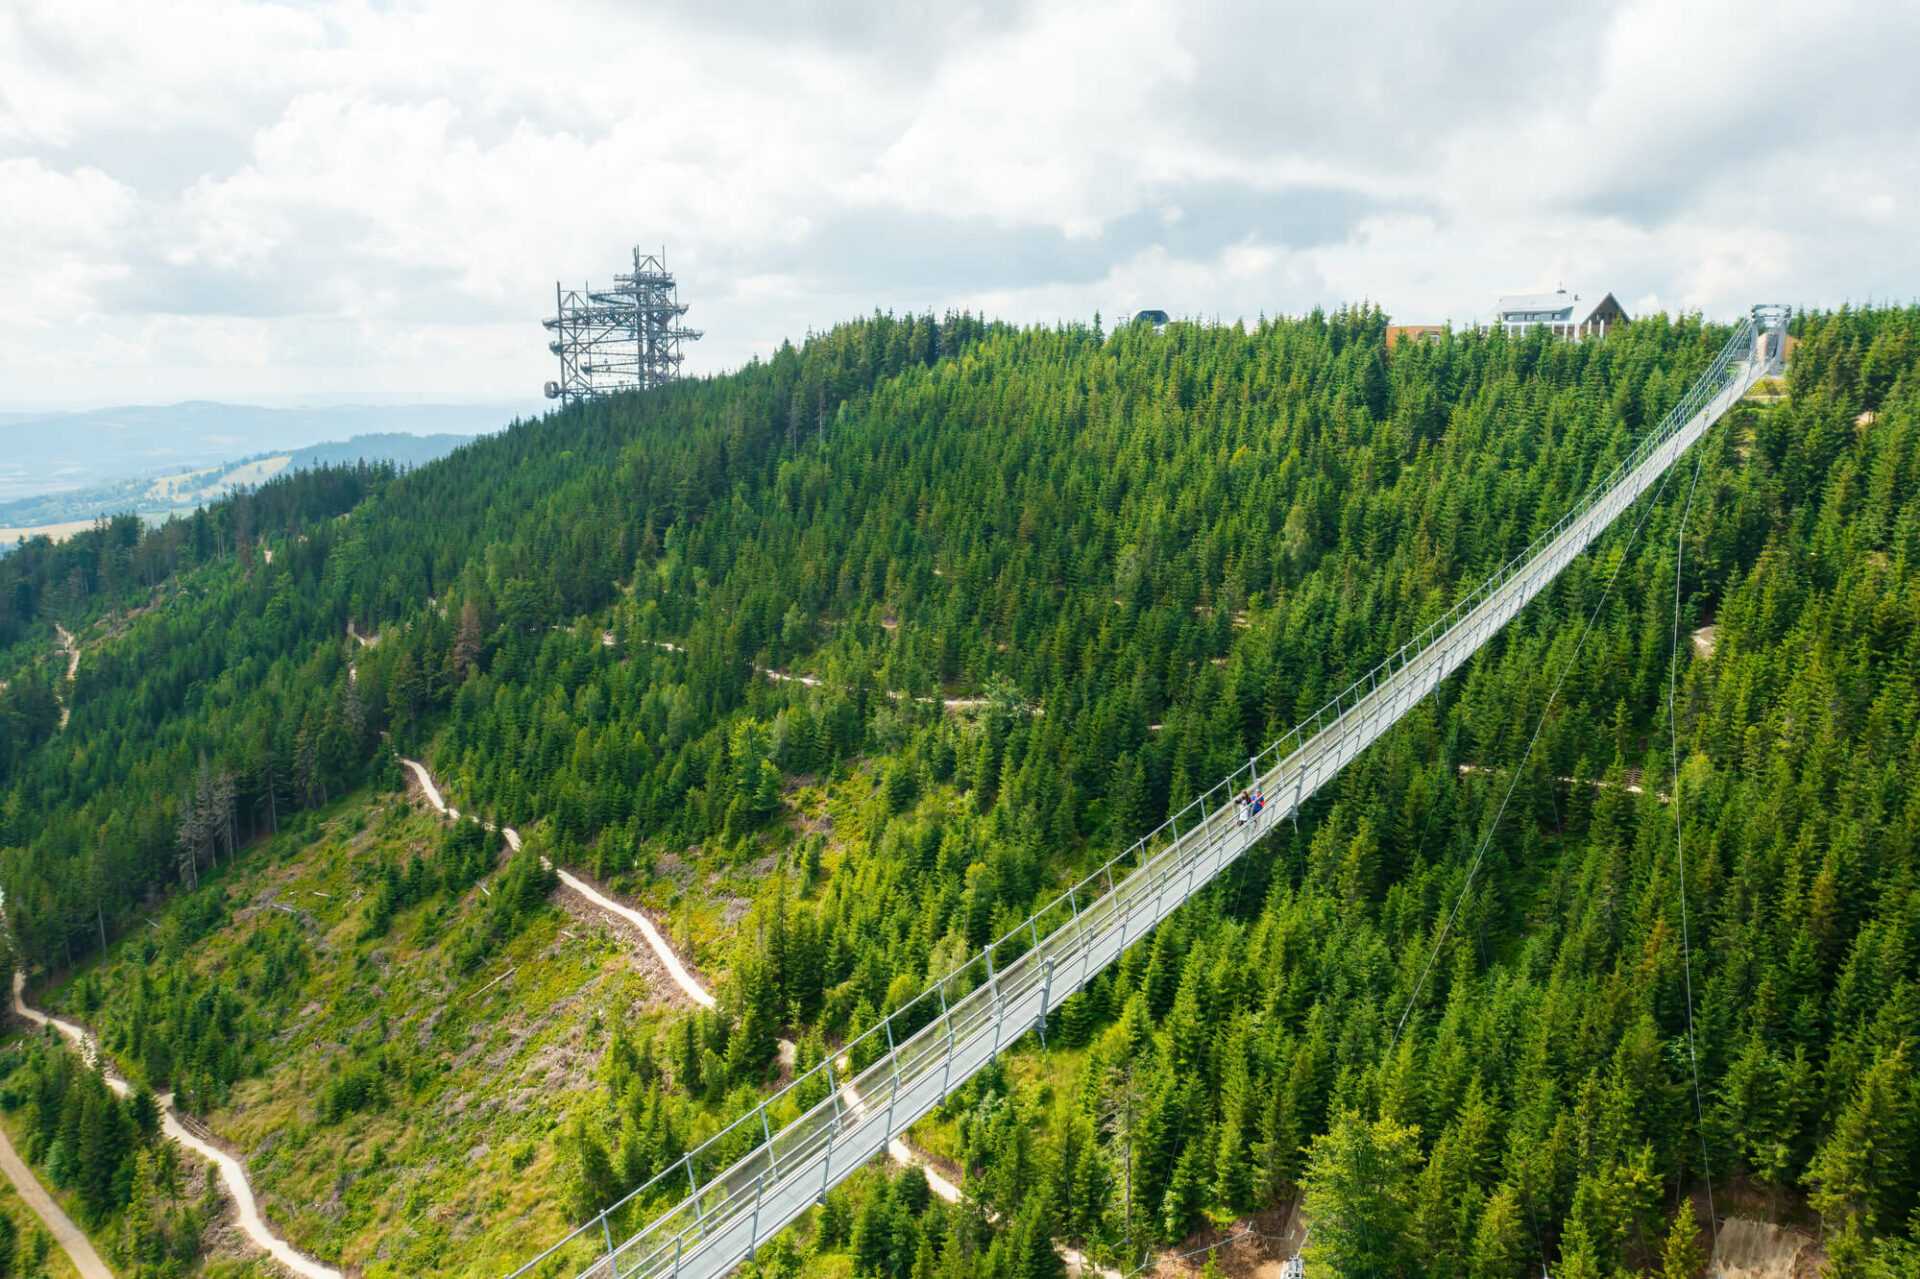 גשר סקיי ברידג' 721 בצ'כיה - המדריך לביקור בגשר התלוי הארוך בעולם!